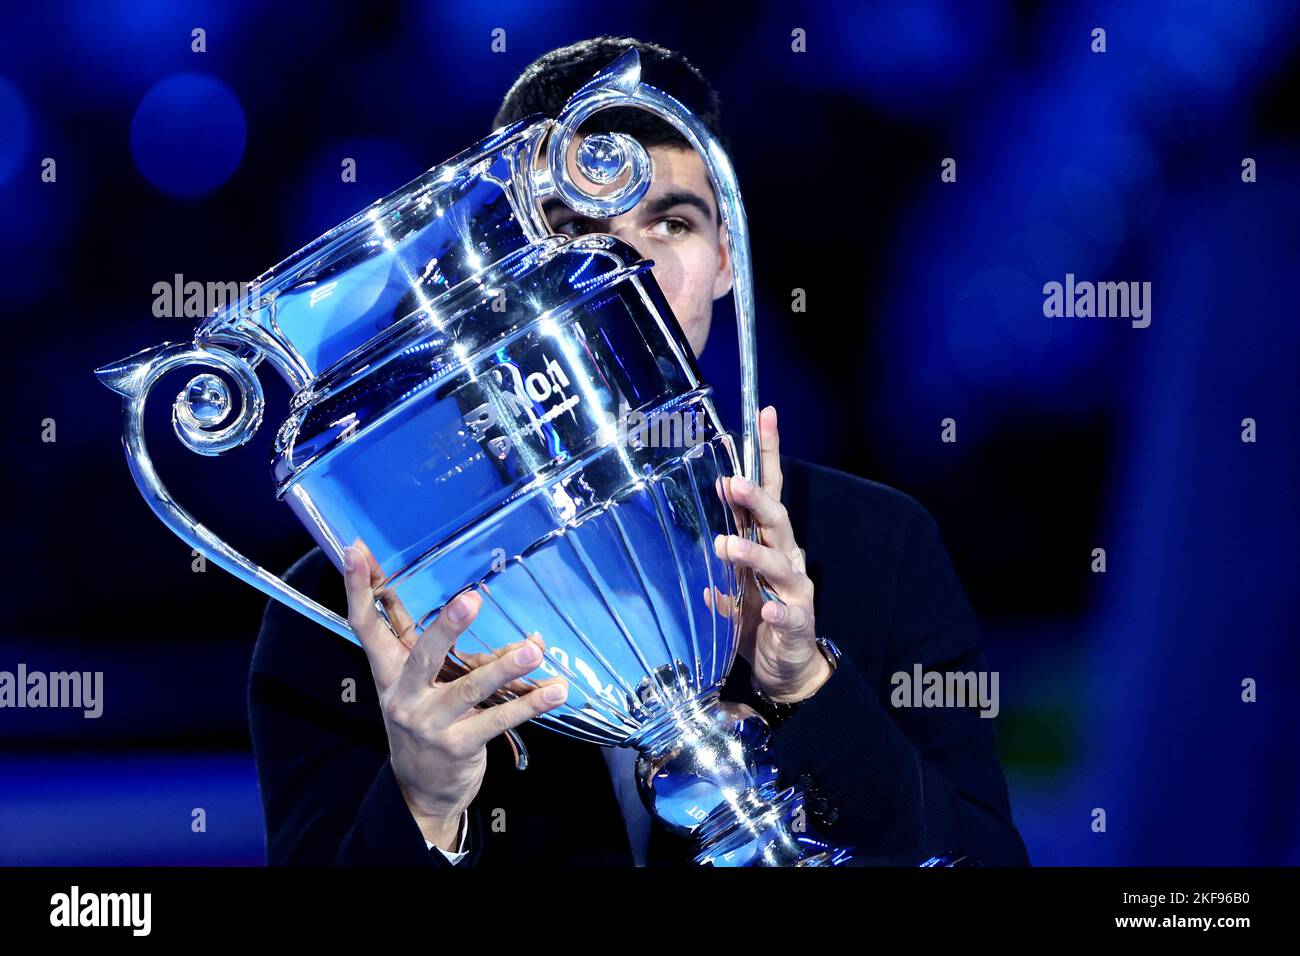 Turin, italie, 16/11/2022, Carlos Alcaraz Garfia d'Espagne avec le trophée du meilleur joueur de l'ATP 2022 au cours du quatrième jour des finales du Tour mondial de l'ATP de Nitto. Banque D'Images